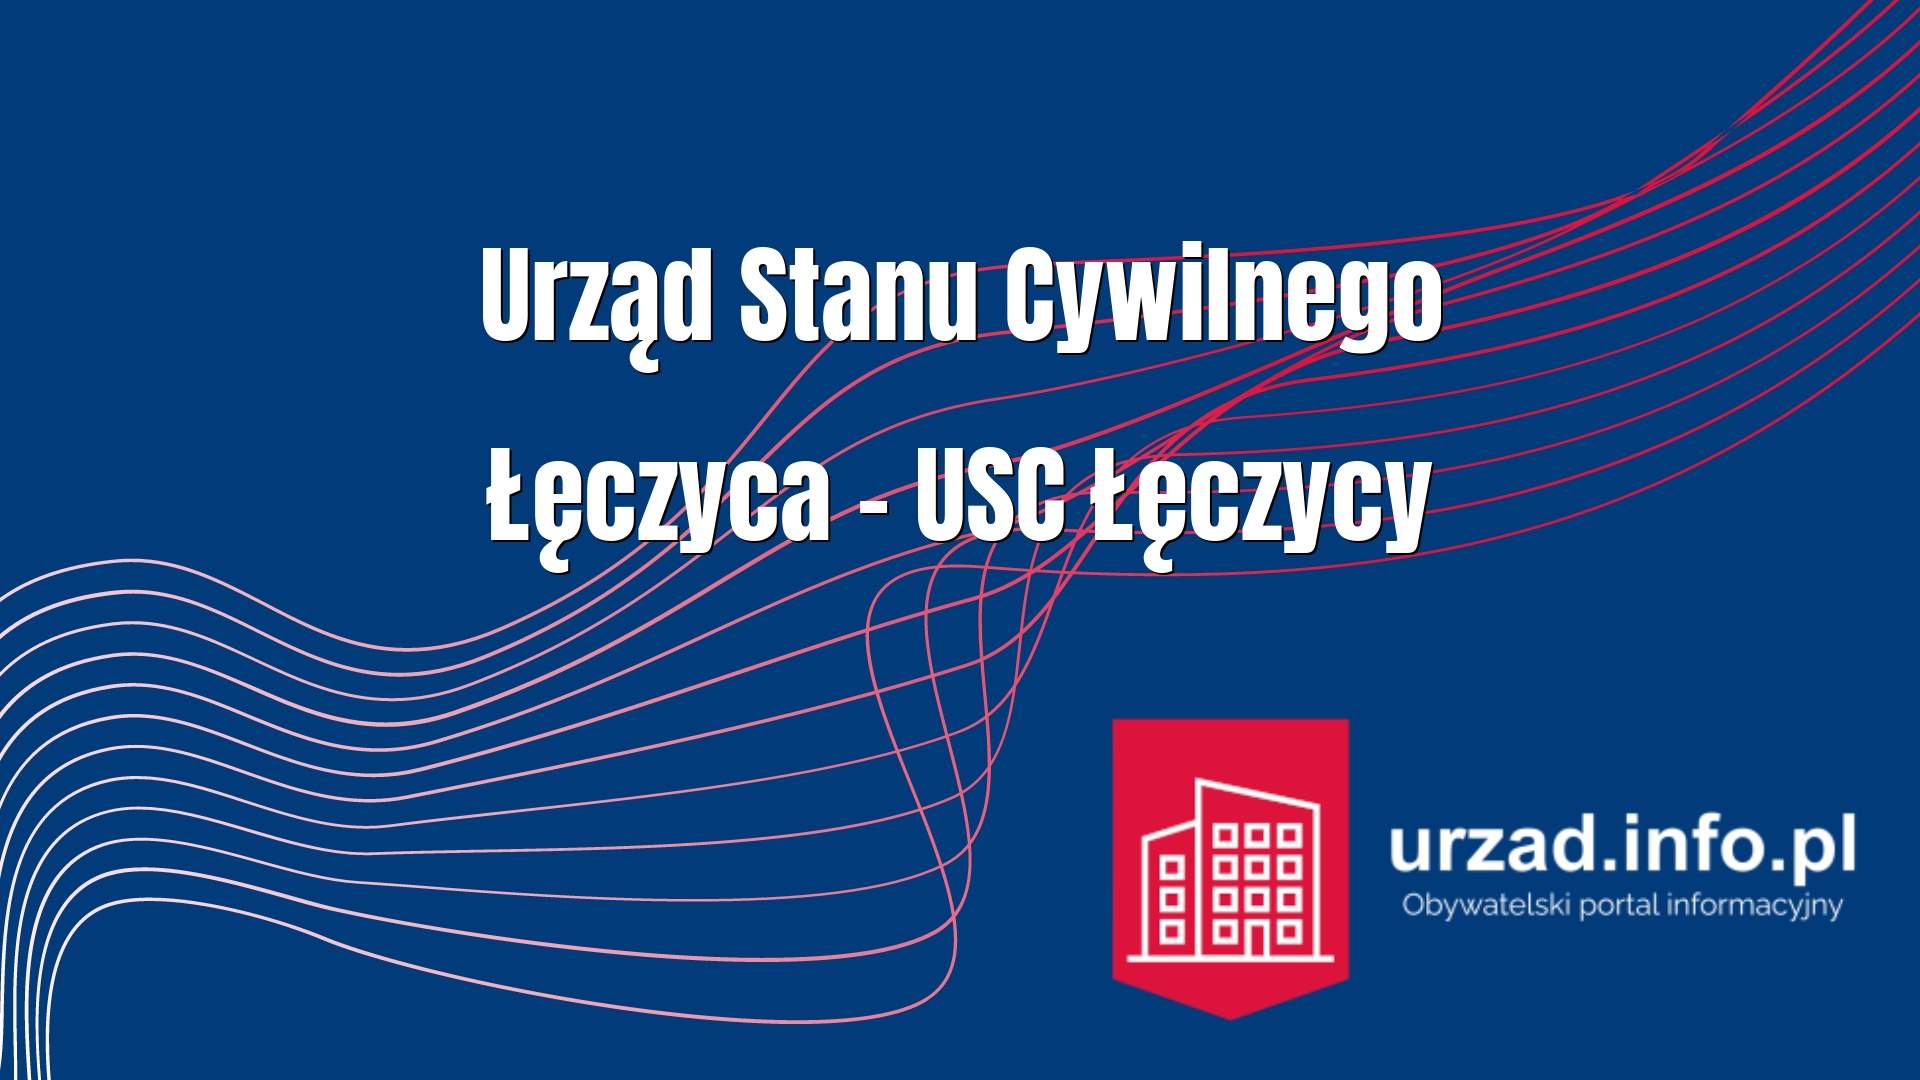 Urząd Stanu Cywilnego Łęczyca – USC Łęczycy